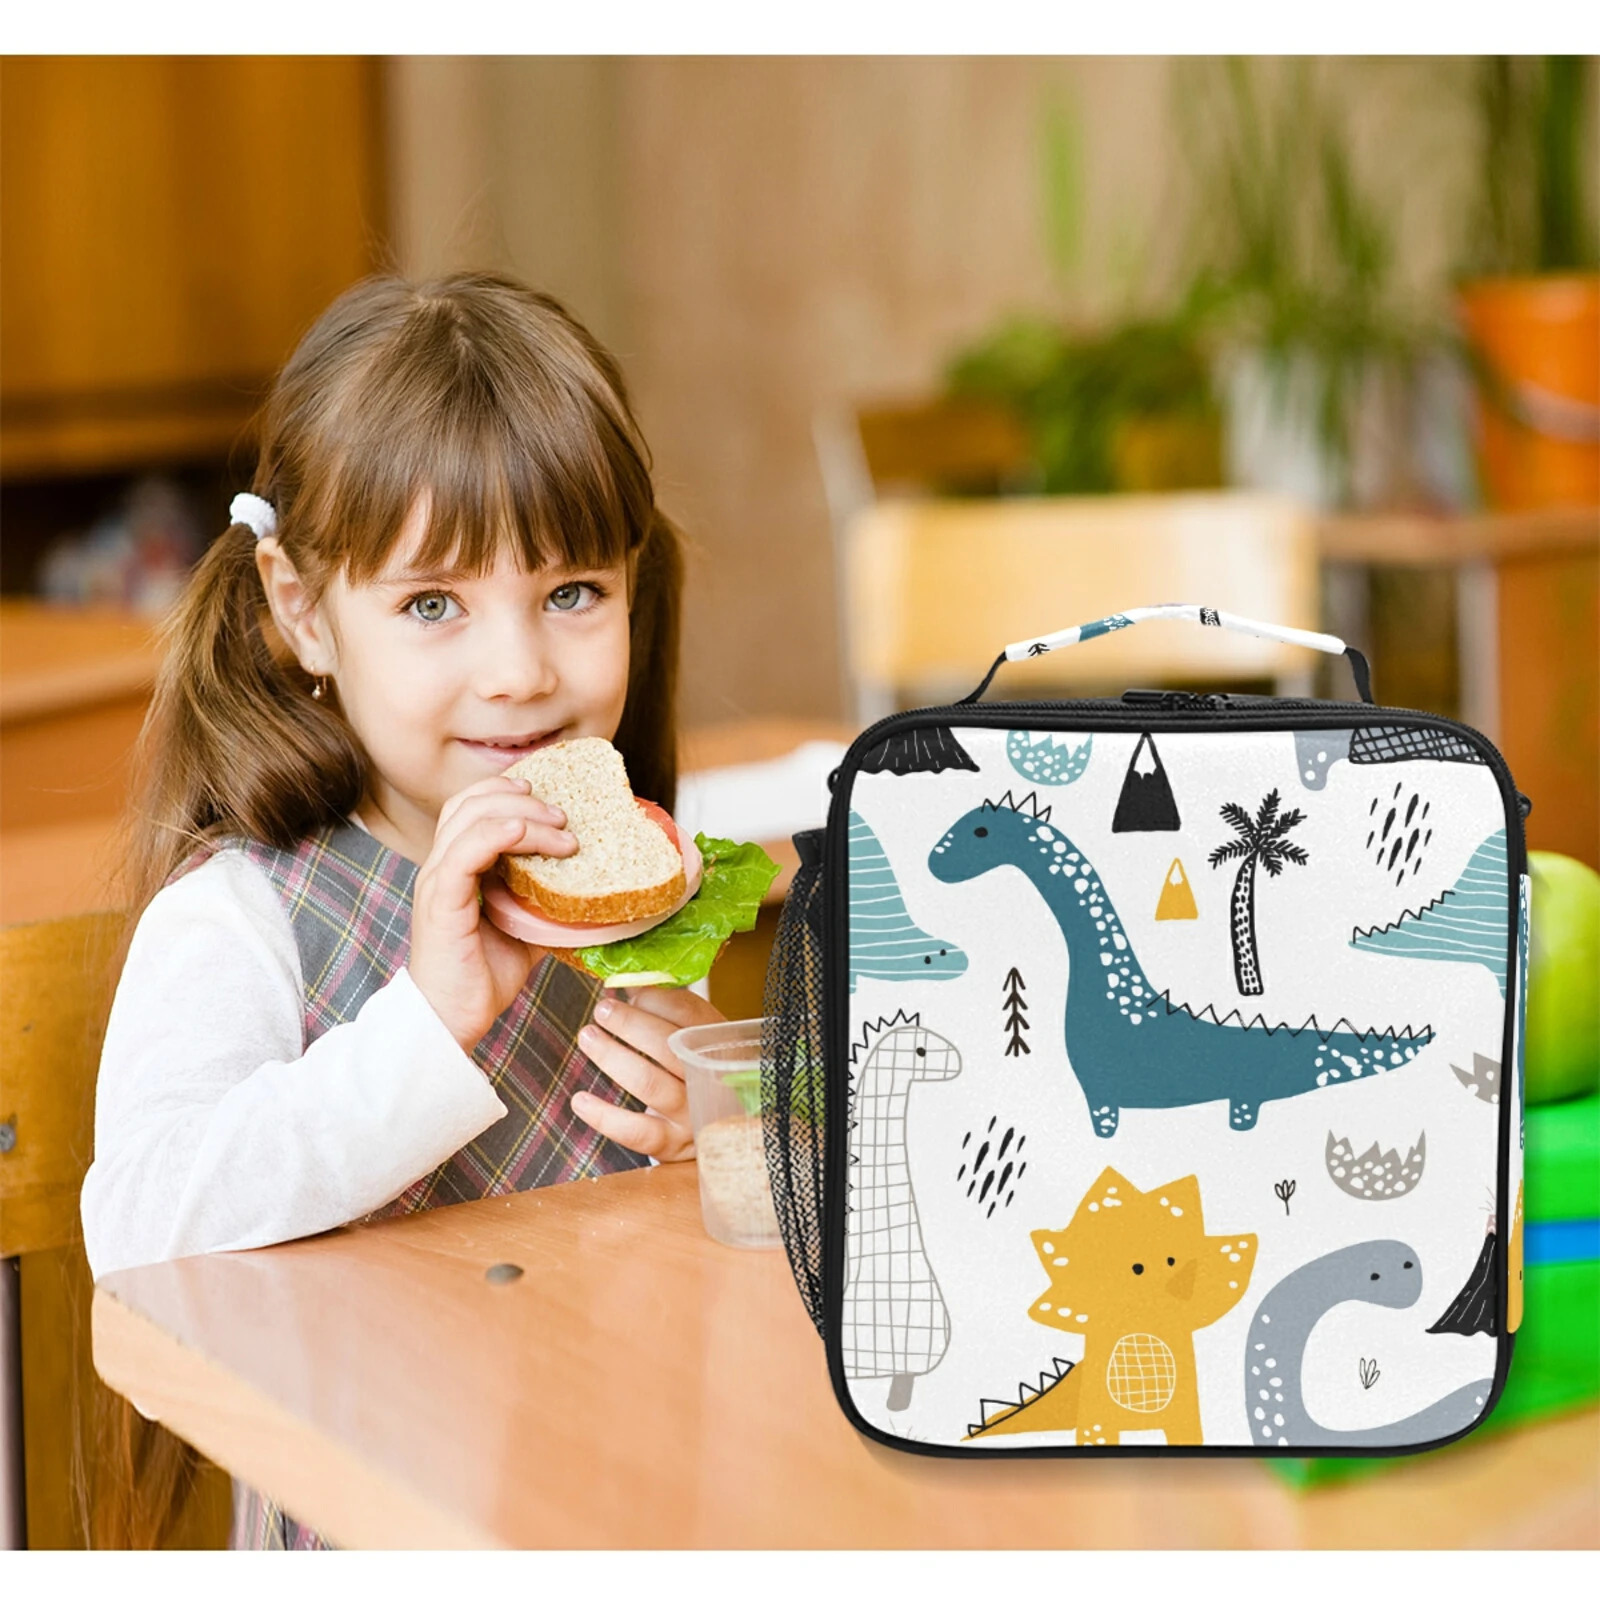 https://ae01.alicdn.com/kf/Sa77bed2970664749893ffe796dd4822b9/School-lunch-bag-food-insulation-box-dinosaur-print-waterproof-refrigerated-lunch-box-with-shoulder-strap-storage.jpg